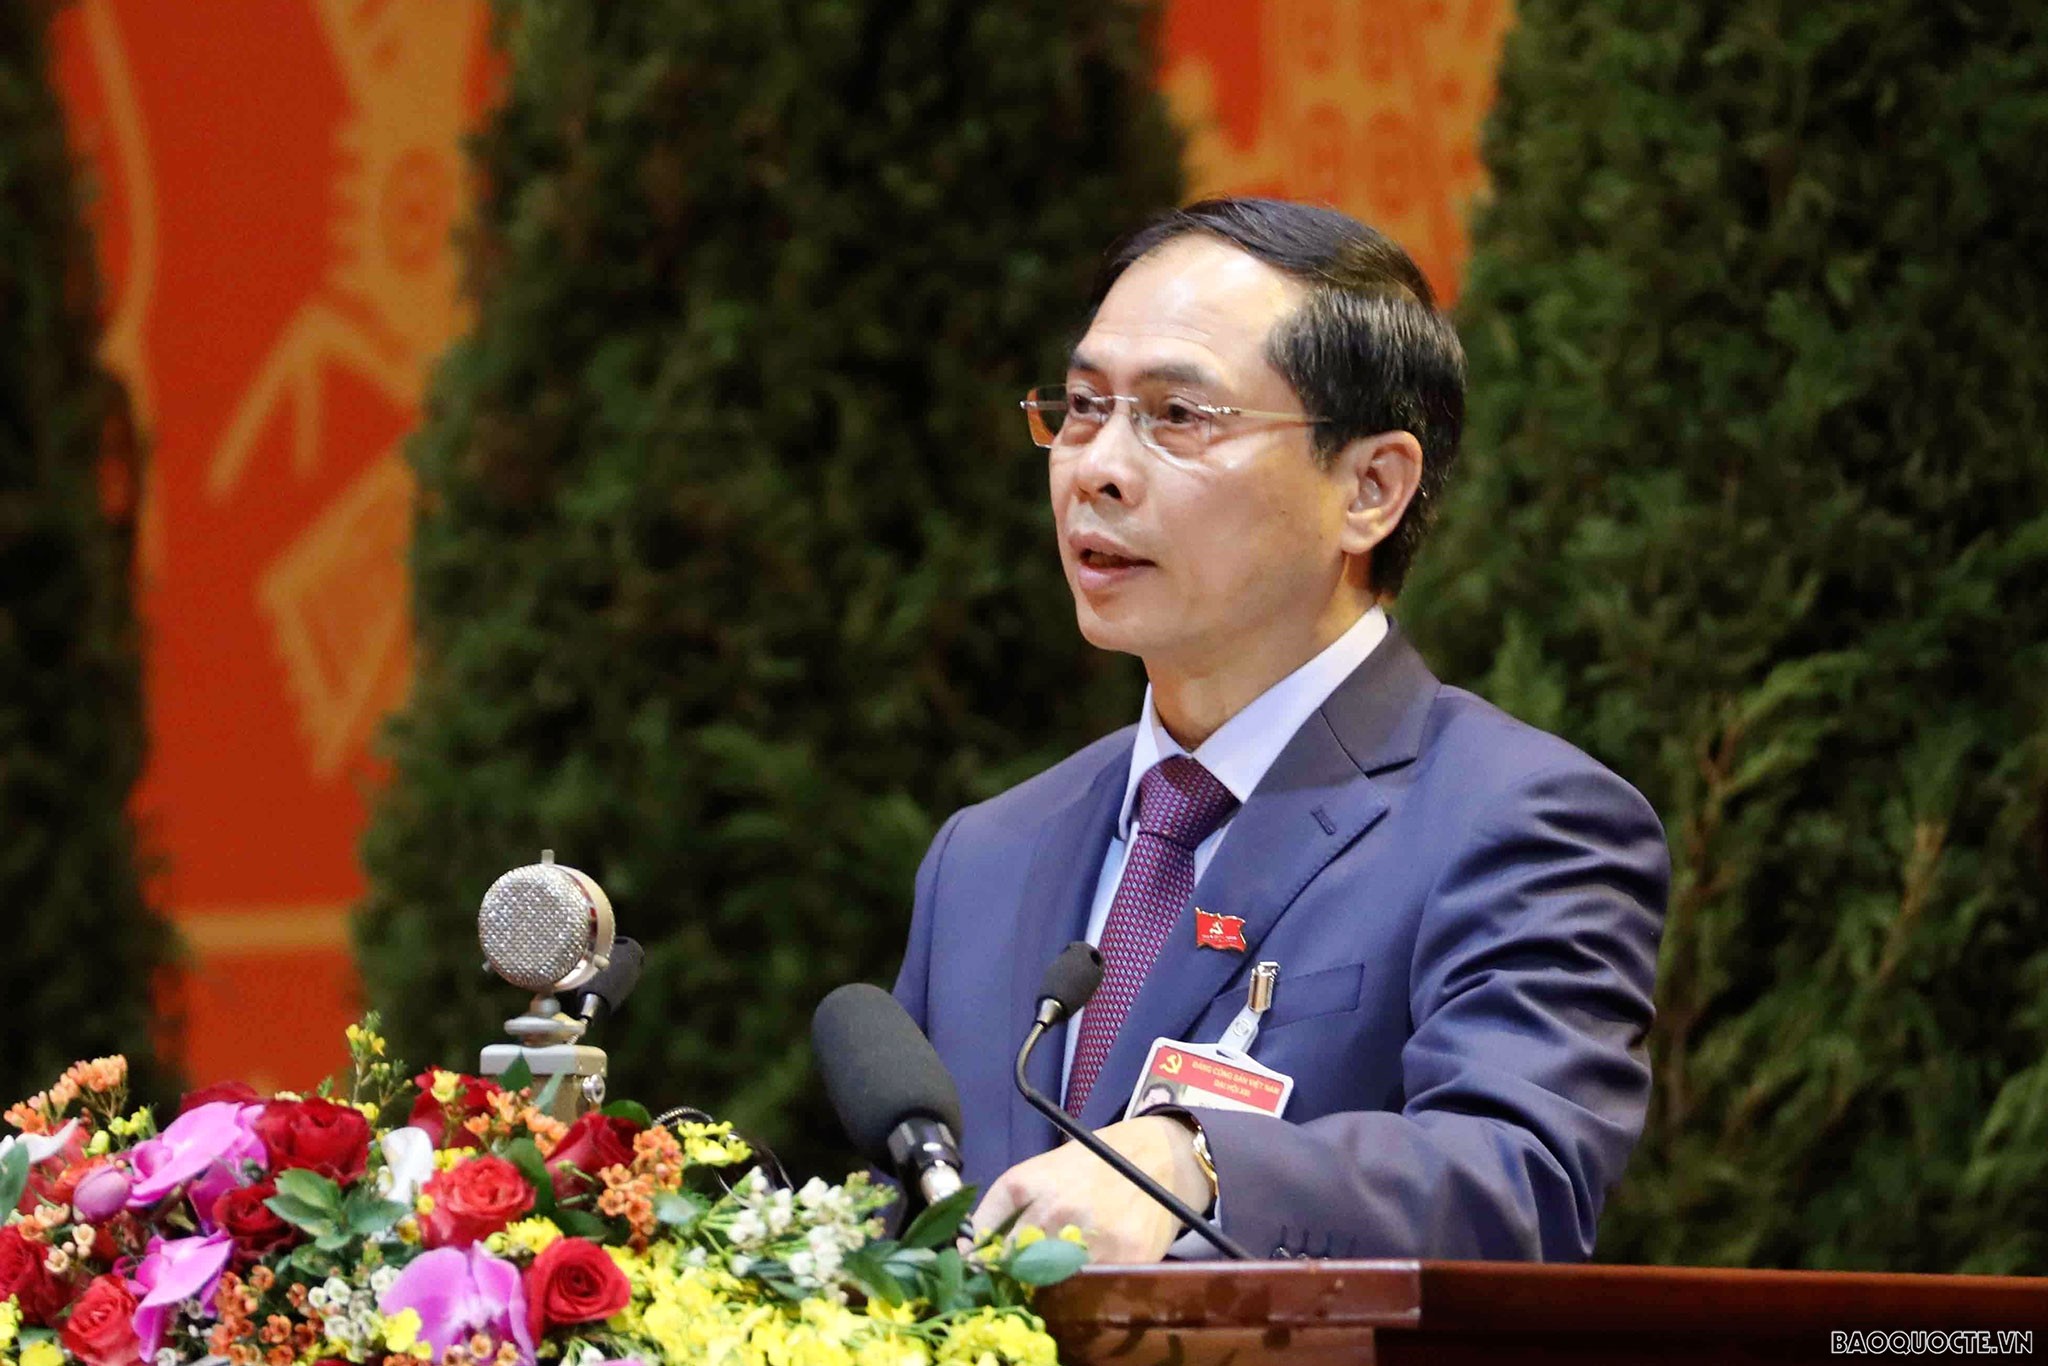 Đồng chí Bùi Thanh Sơn, Ủy viên Trung ương Đảng, Thứ trưởng Thường trực Bộ Ngoại giao tham luận tại Đại hội XIII ngày 27/1.